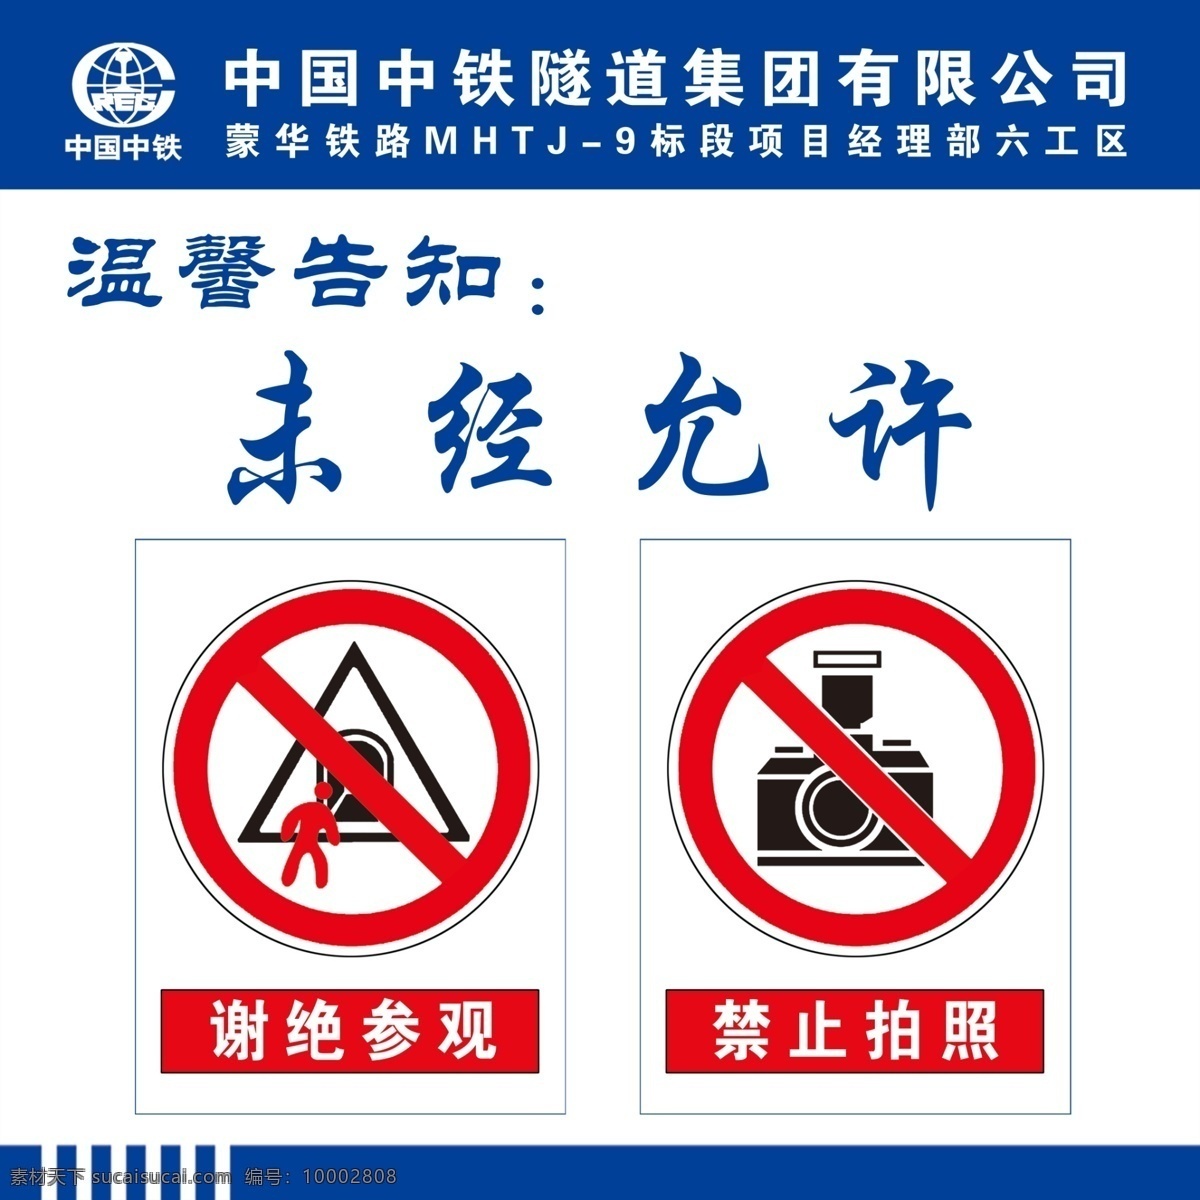 隧道 洞口 温馨 提示 分层 温馨提示 谢绝参观 禁止拍照 中国中铁 中铁标志 温馨告知 警示牌 提示牌 隧道口 白色